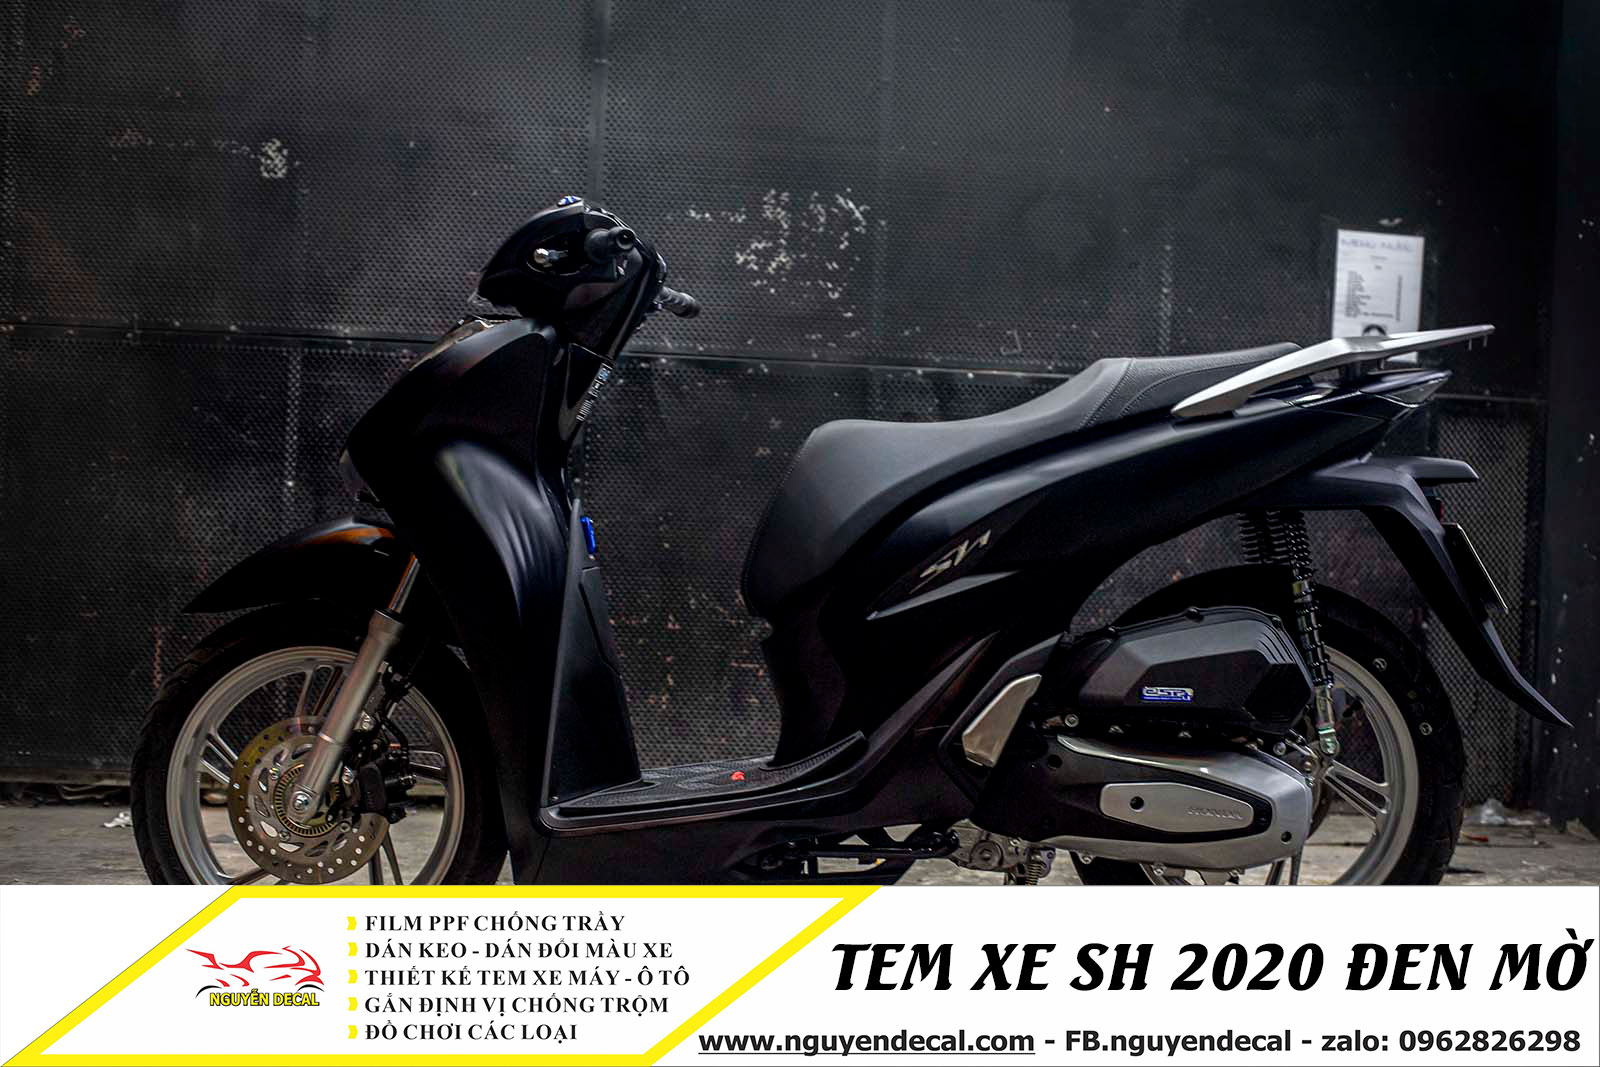 Chi tiết Honda Sh 2020 độ màu đen nhám Và giá bán tại đại lý Honda Hồng Đức  11 Cuối tháng 022020  YouTube